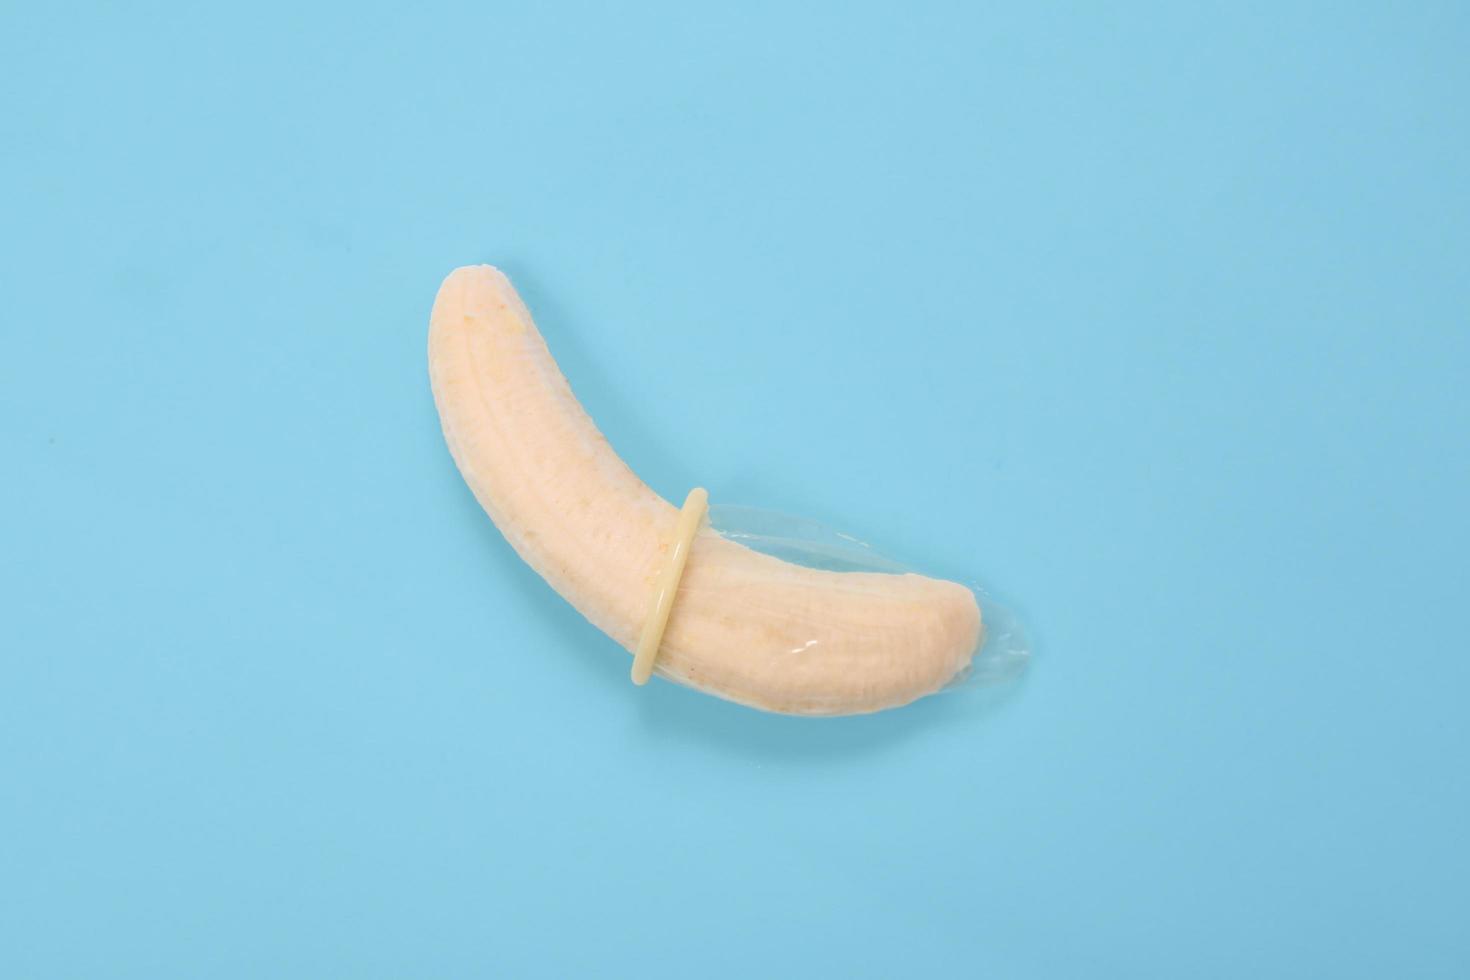 éducation sexuelle avec banane et préservatif isolé sur fond bleu photo